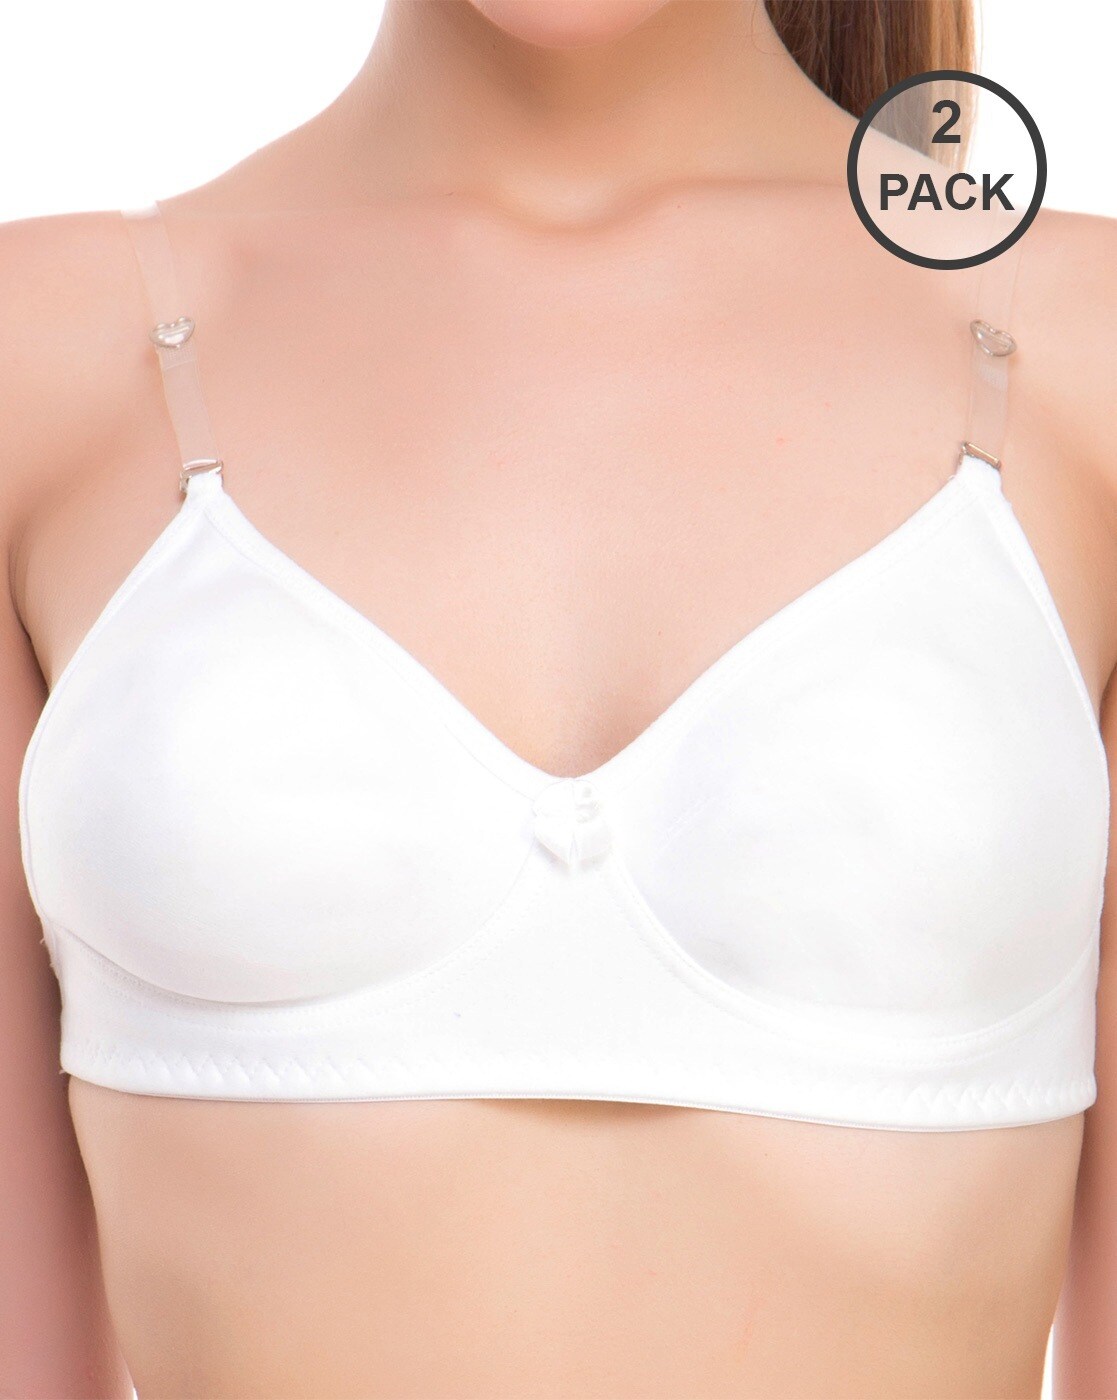 Buy White Bras for Women by Lady Lyka Online